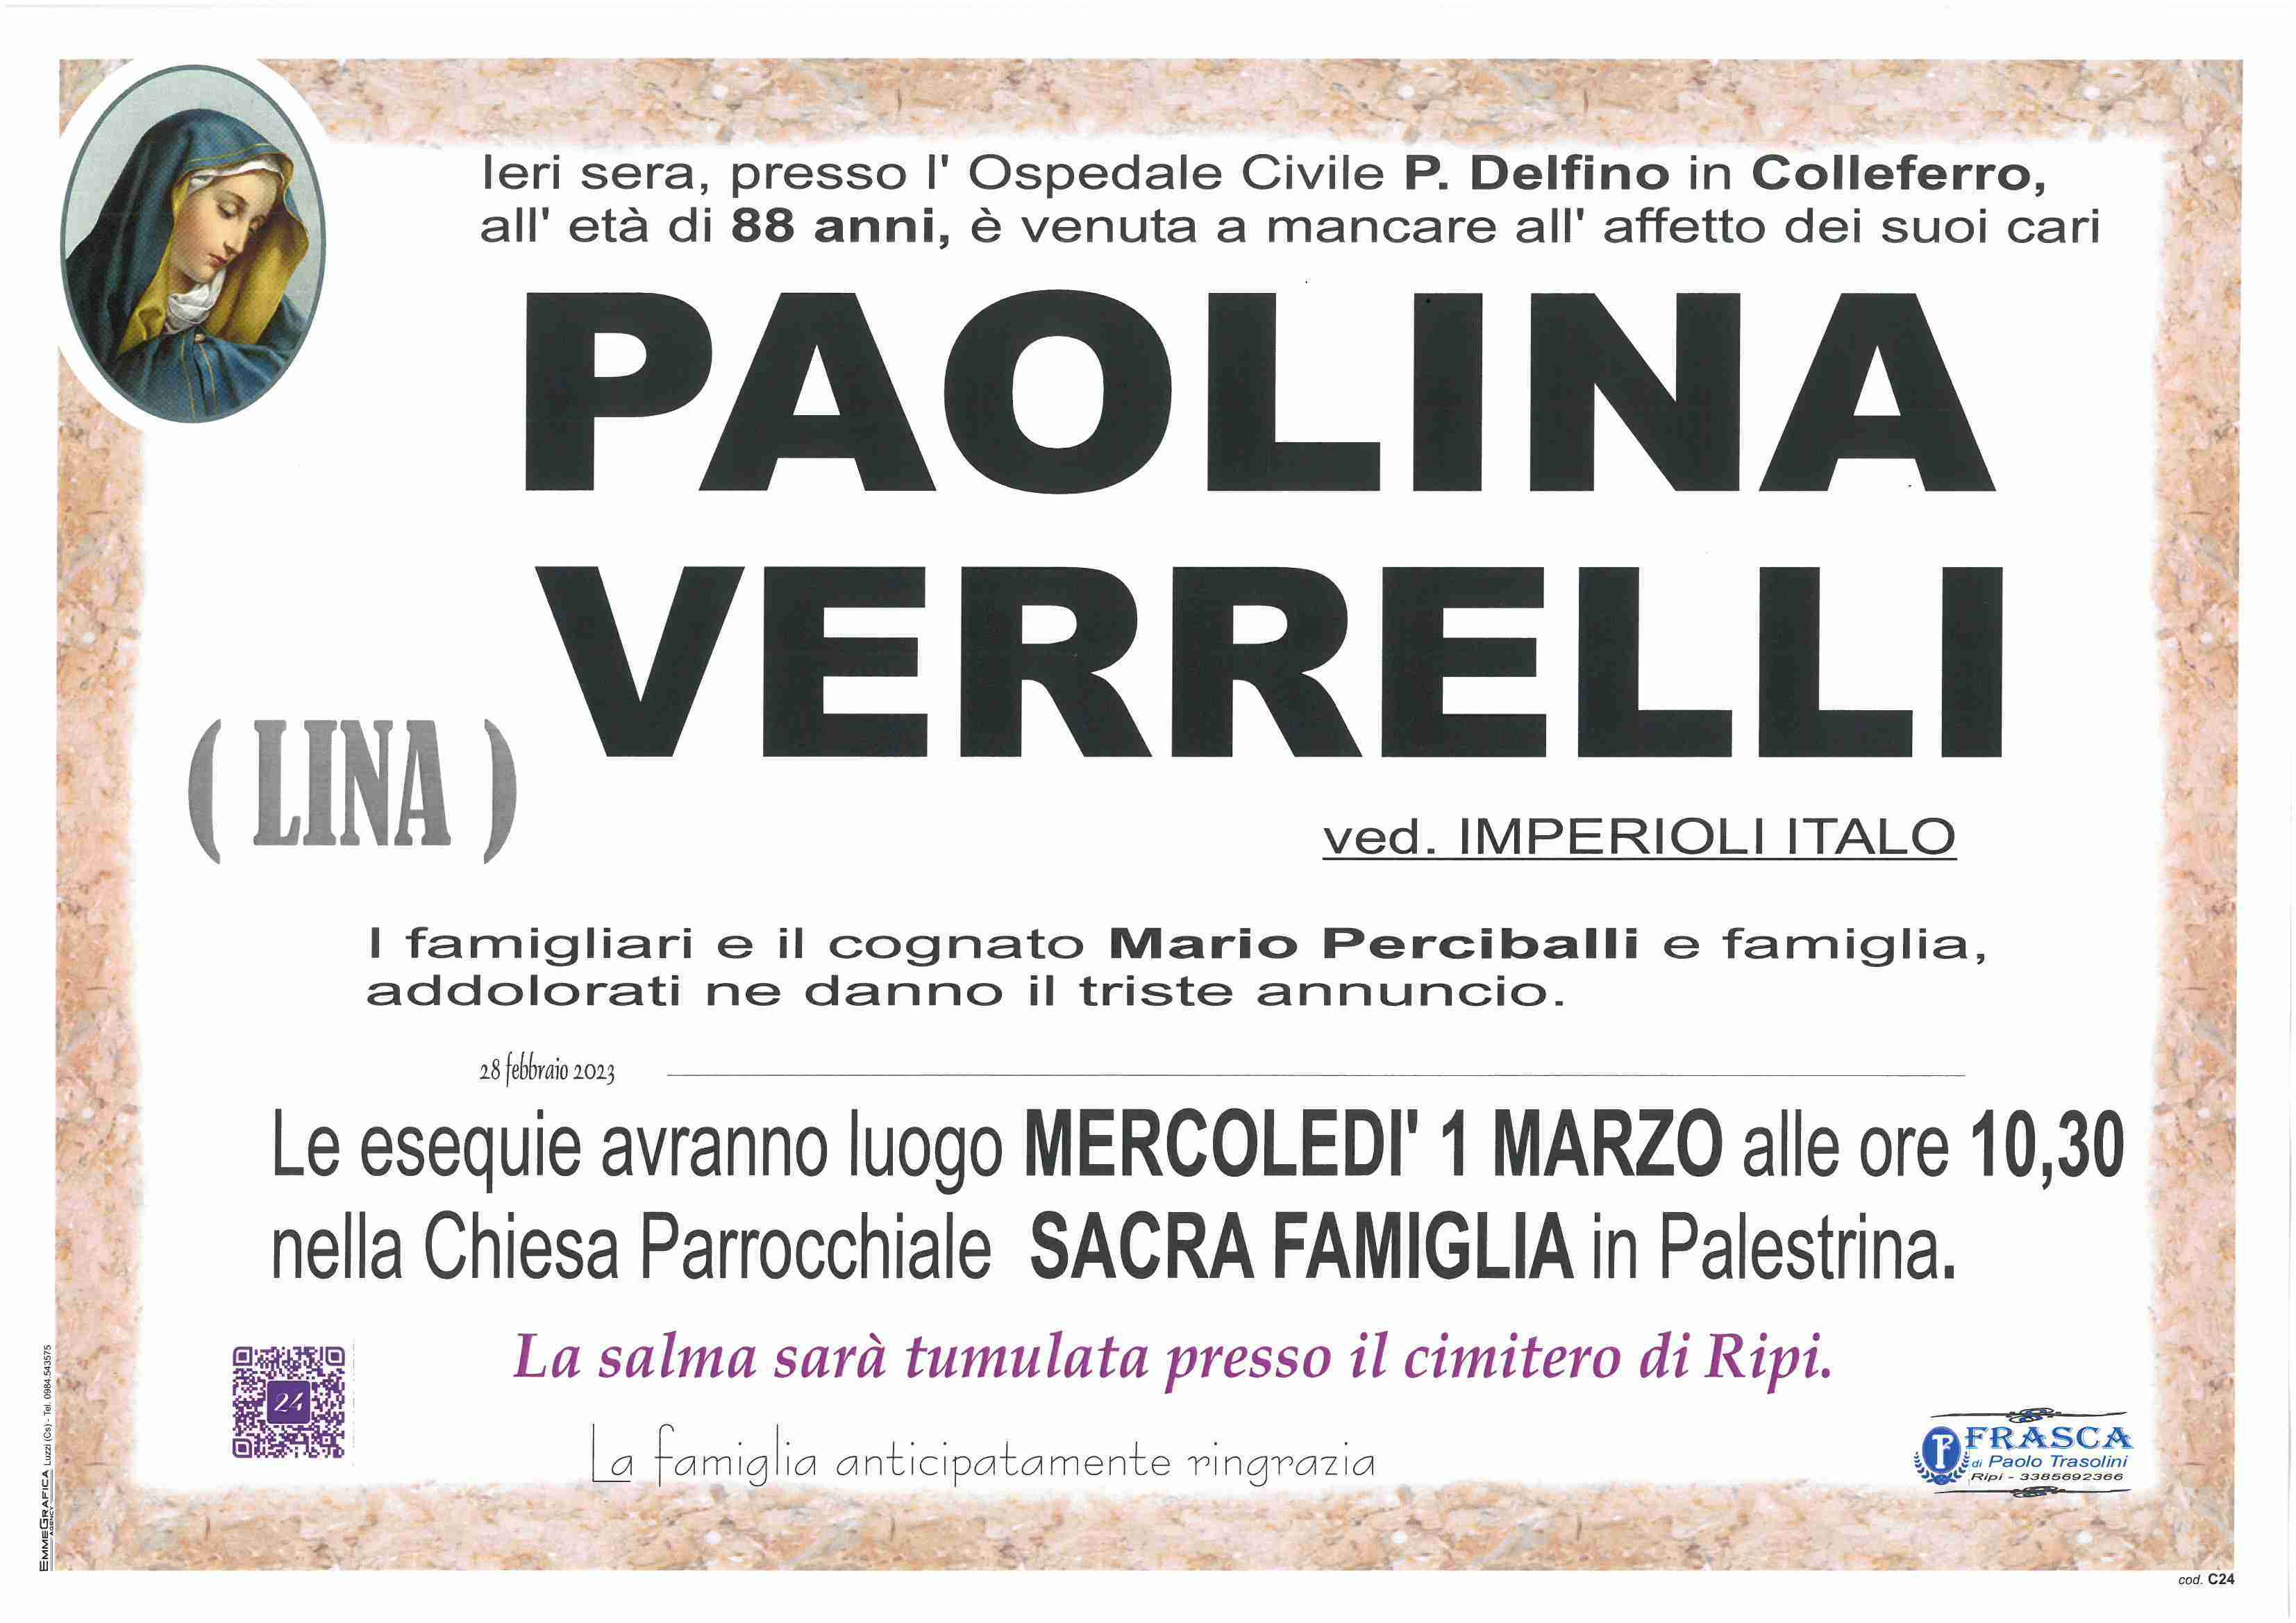 Paolina Verrelli